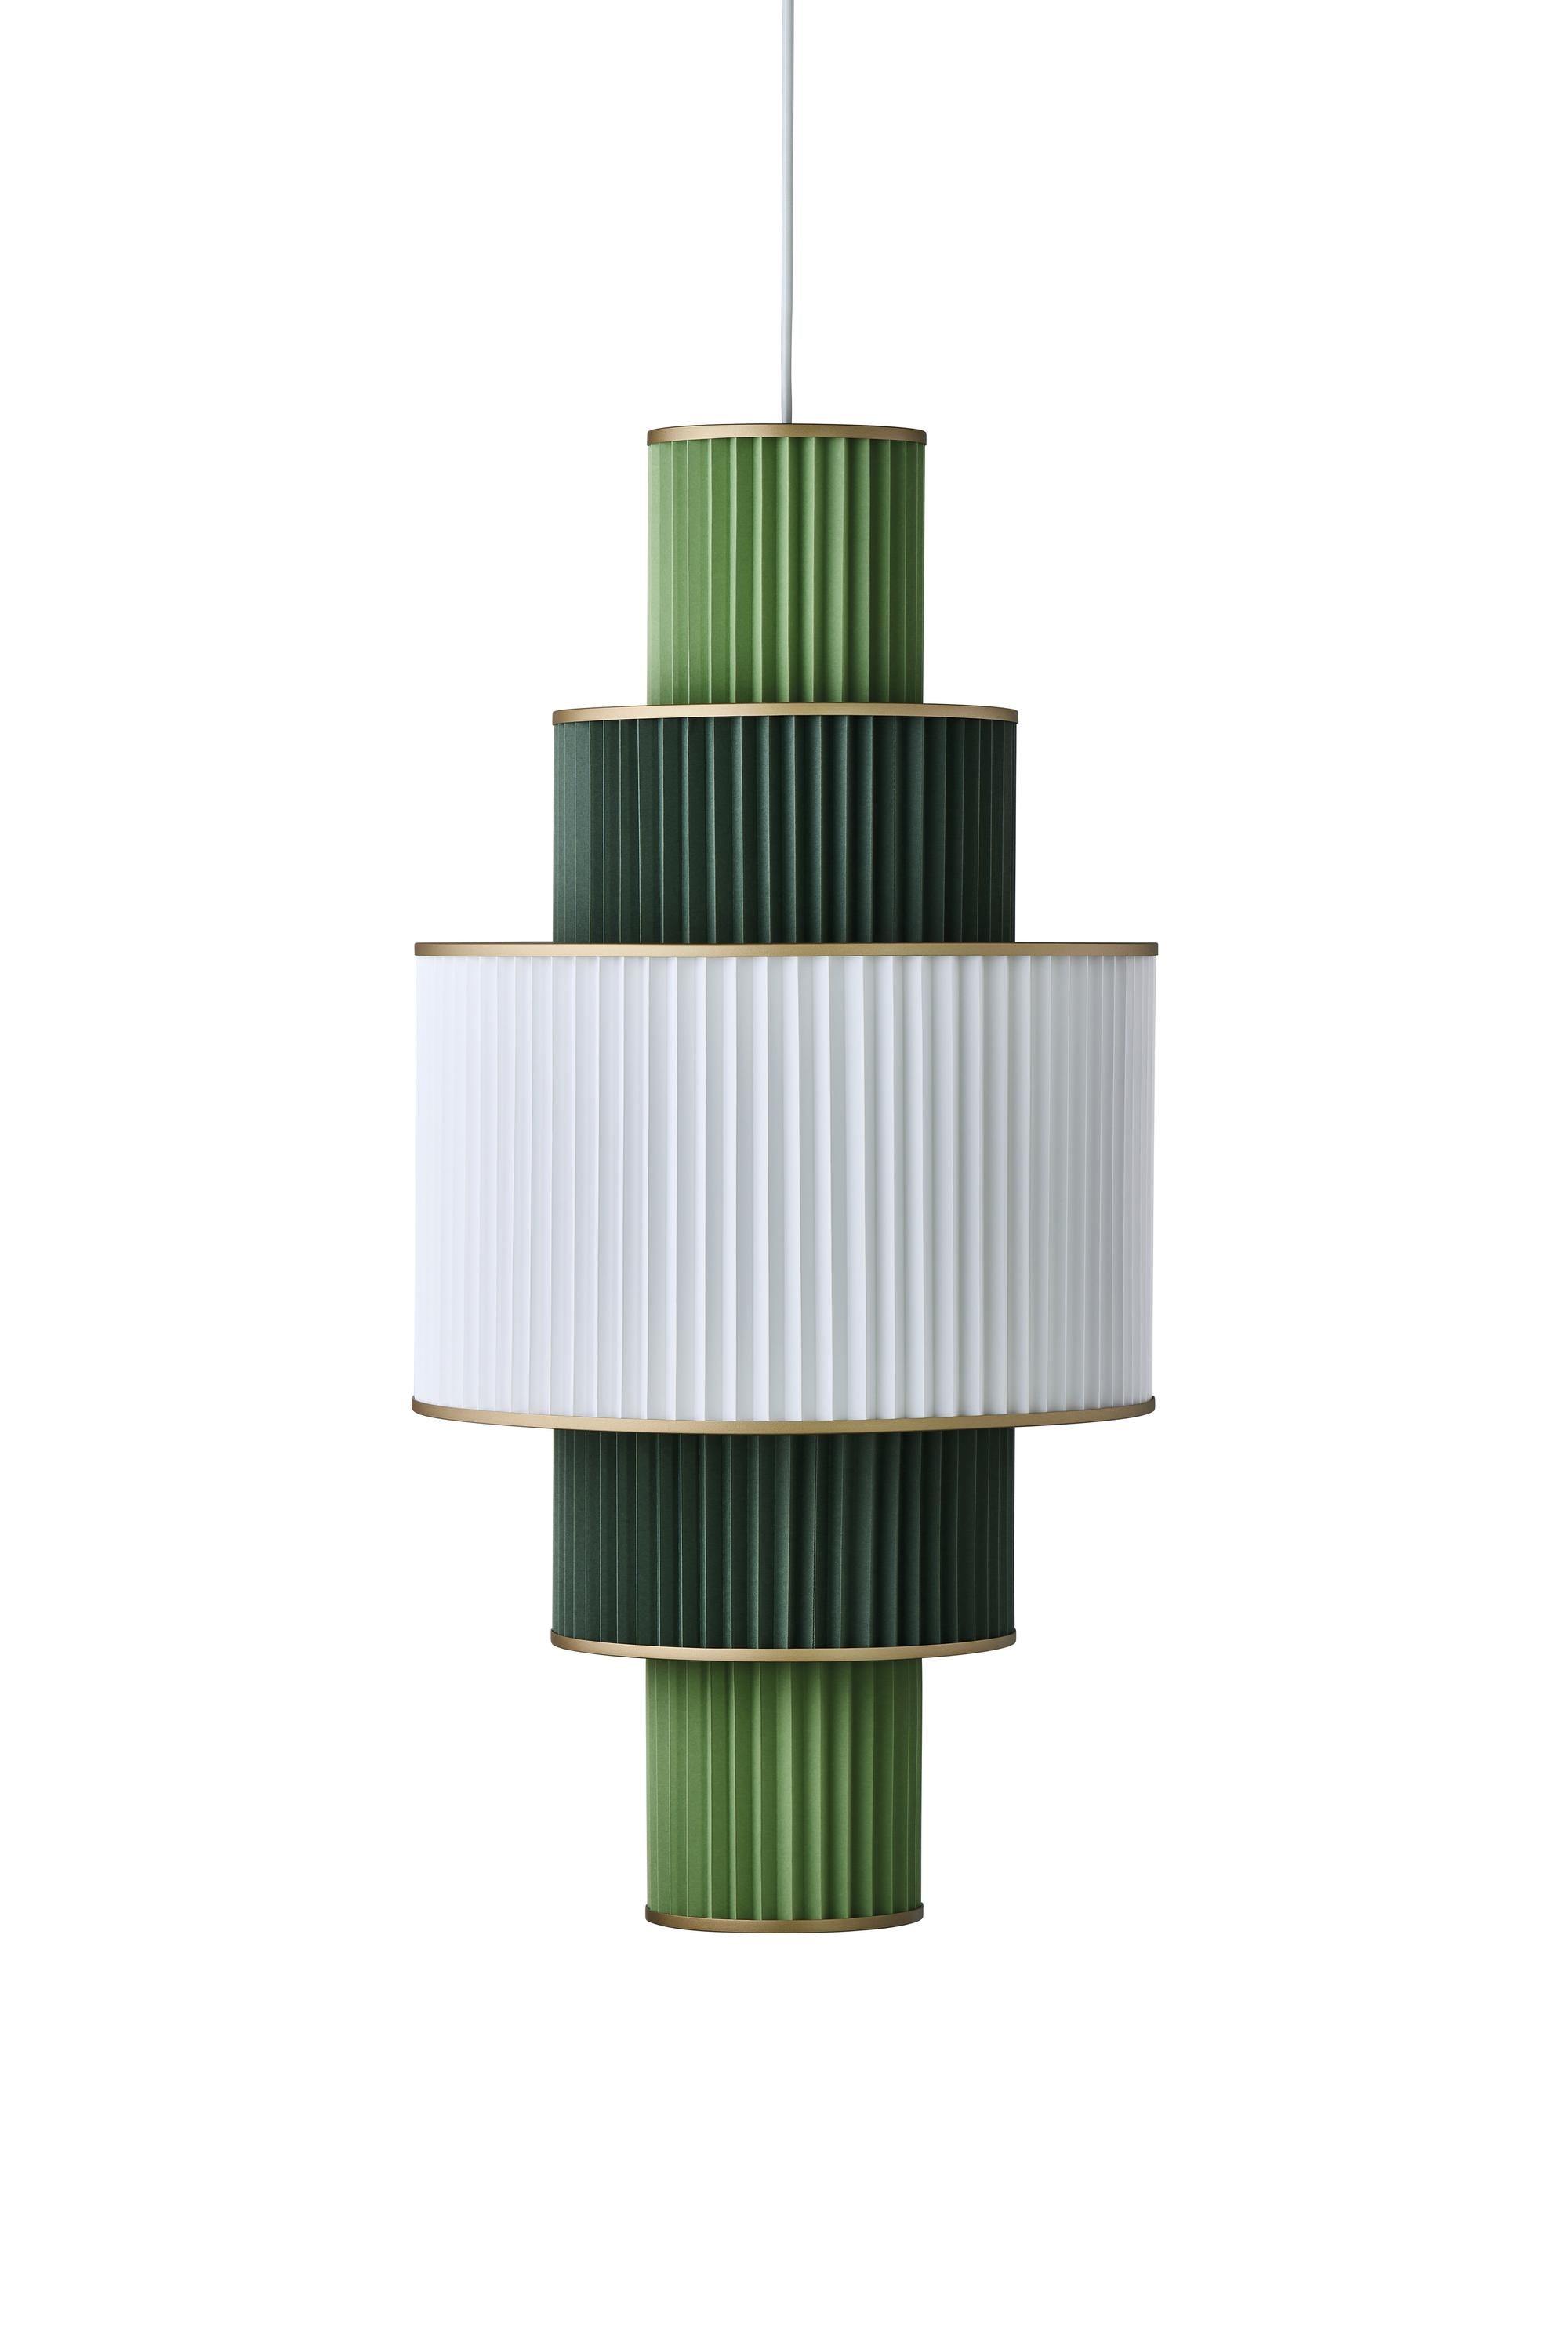 Le Klint Plivello Suspension Lamp Gouden/Wit/lichtgroen met 5 tinten (S M L M S)